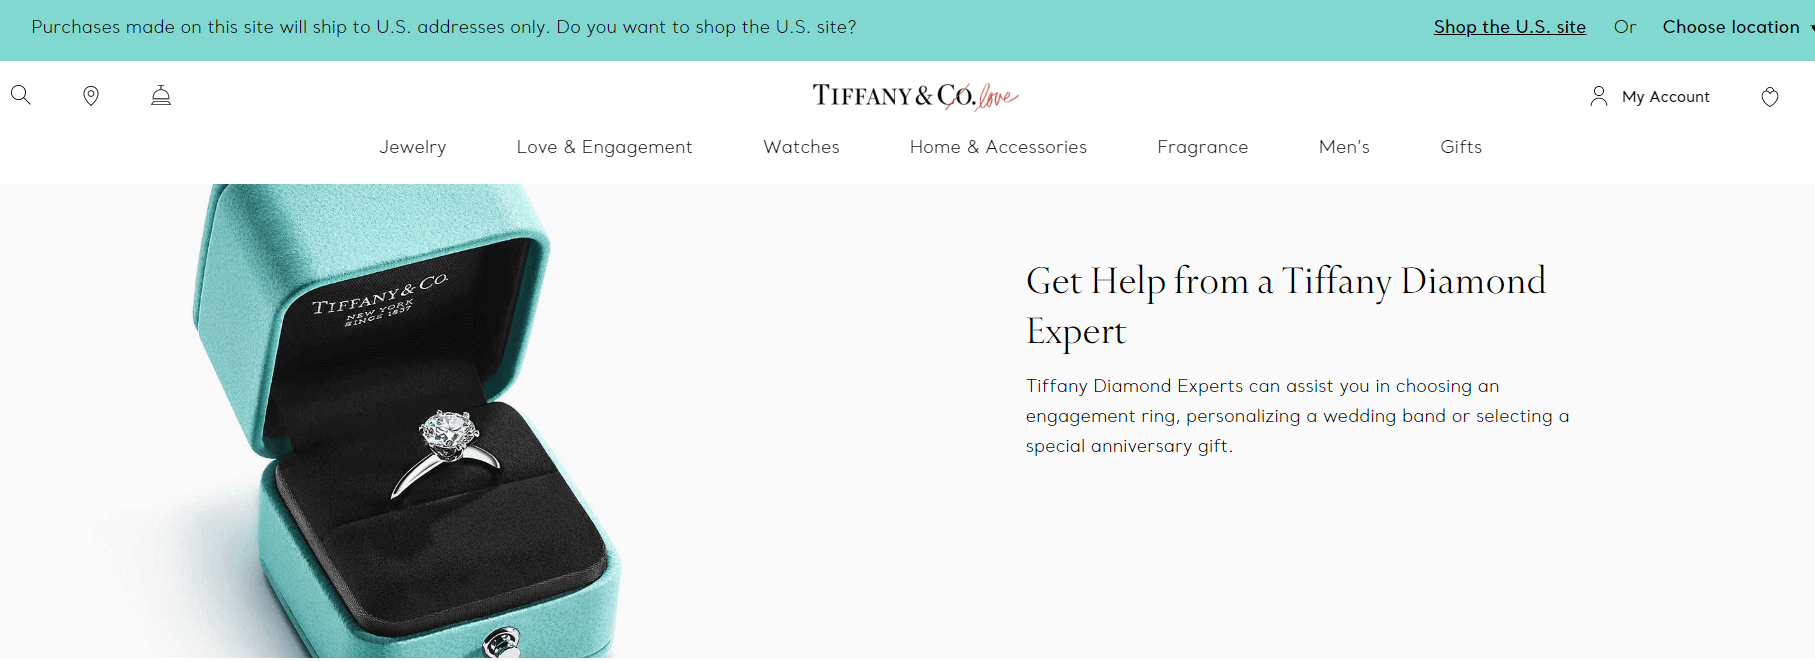 Tiffany website design call an expert 